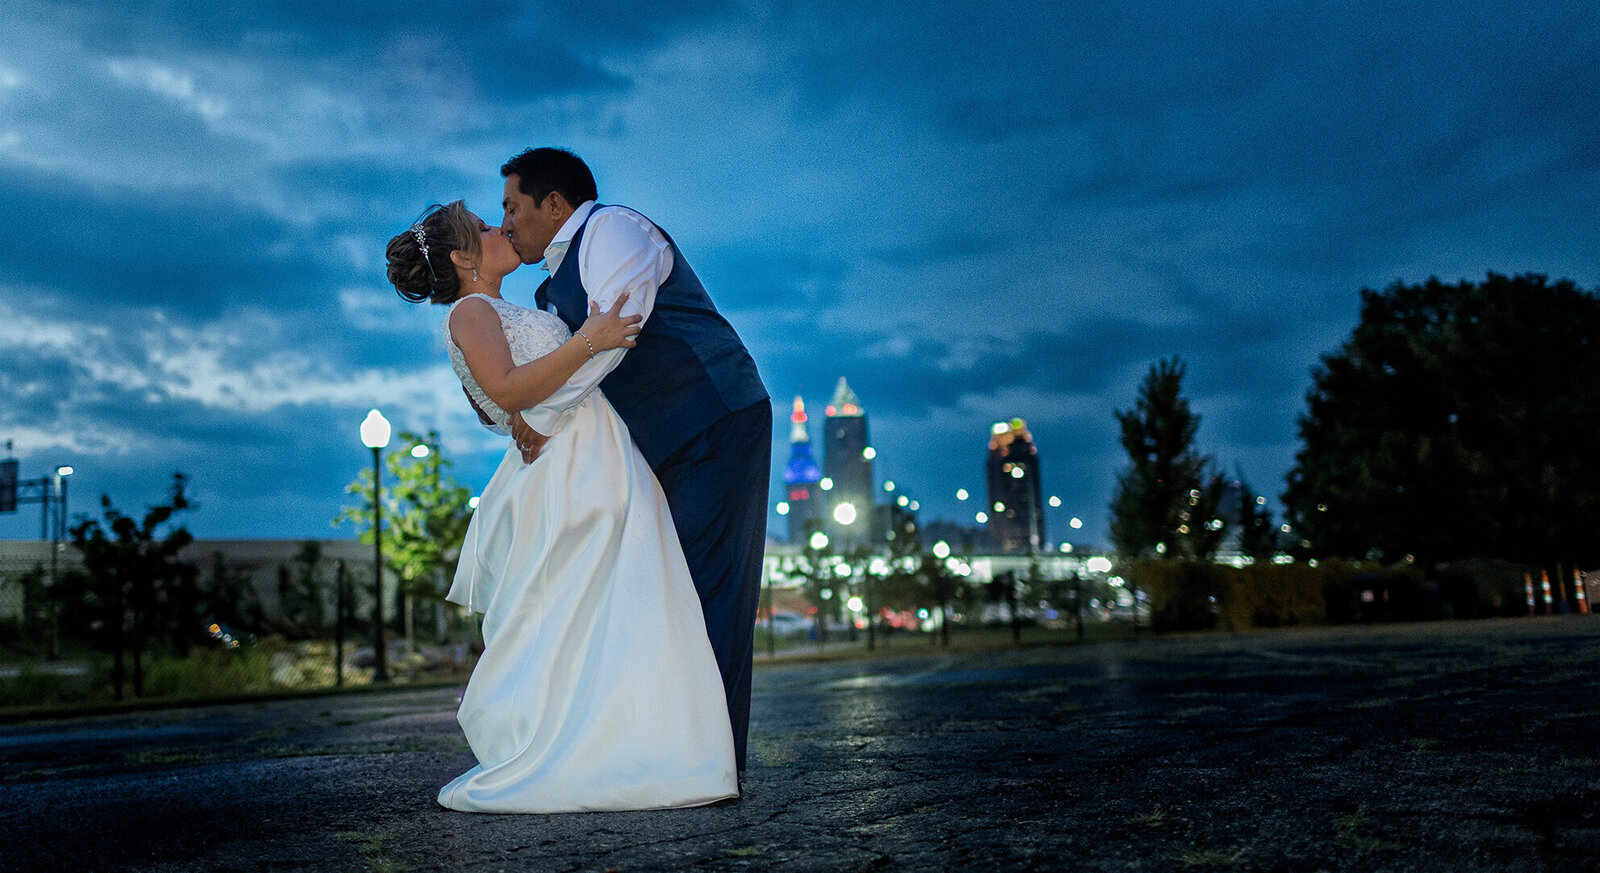 Cleveland Wedding Photography wedding photography (37 of 46)